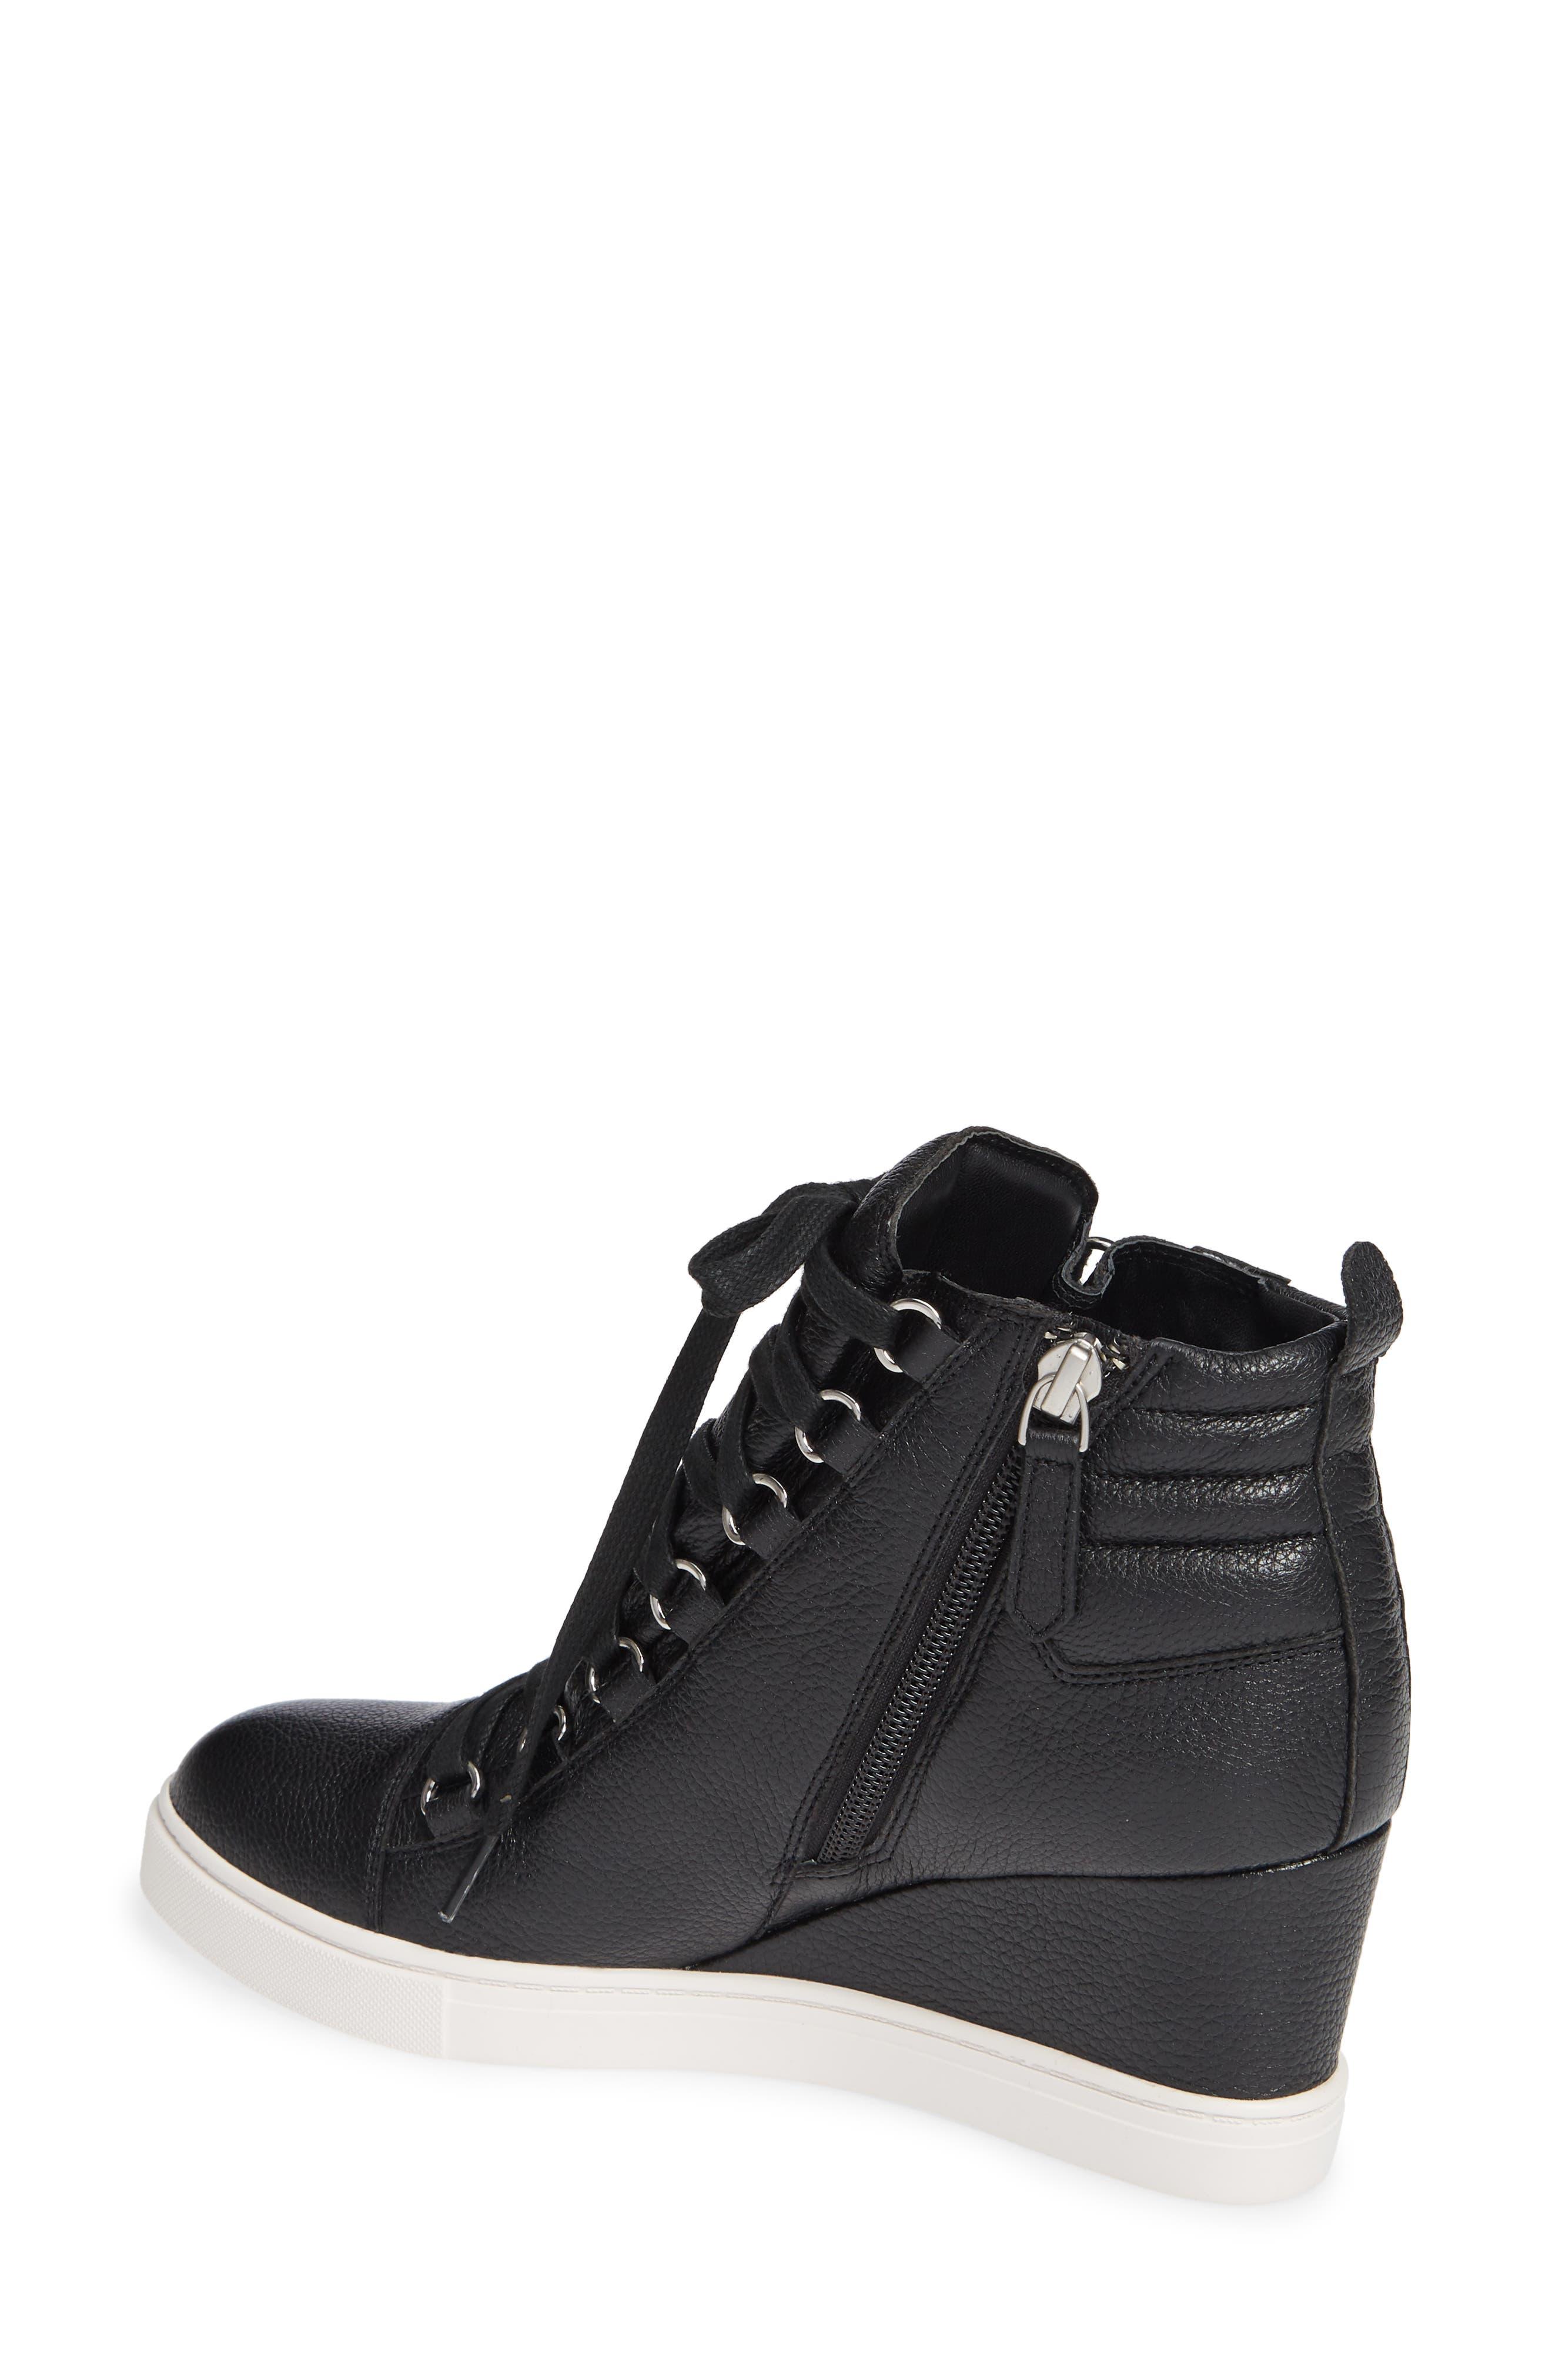 Linea Paolo Fenton Wedge Sneaker in Black | Lyst